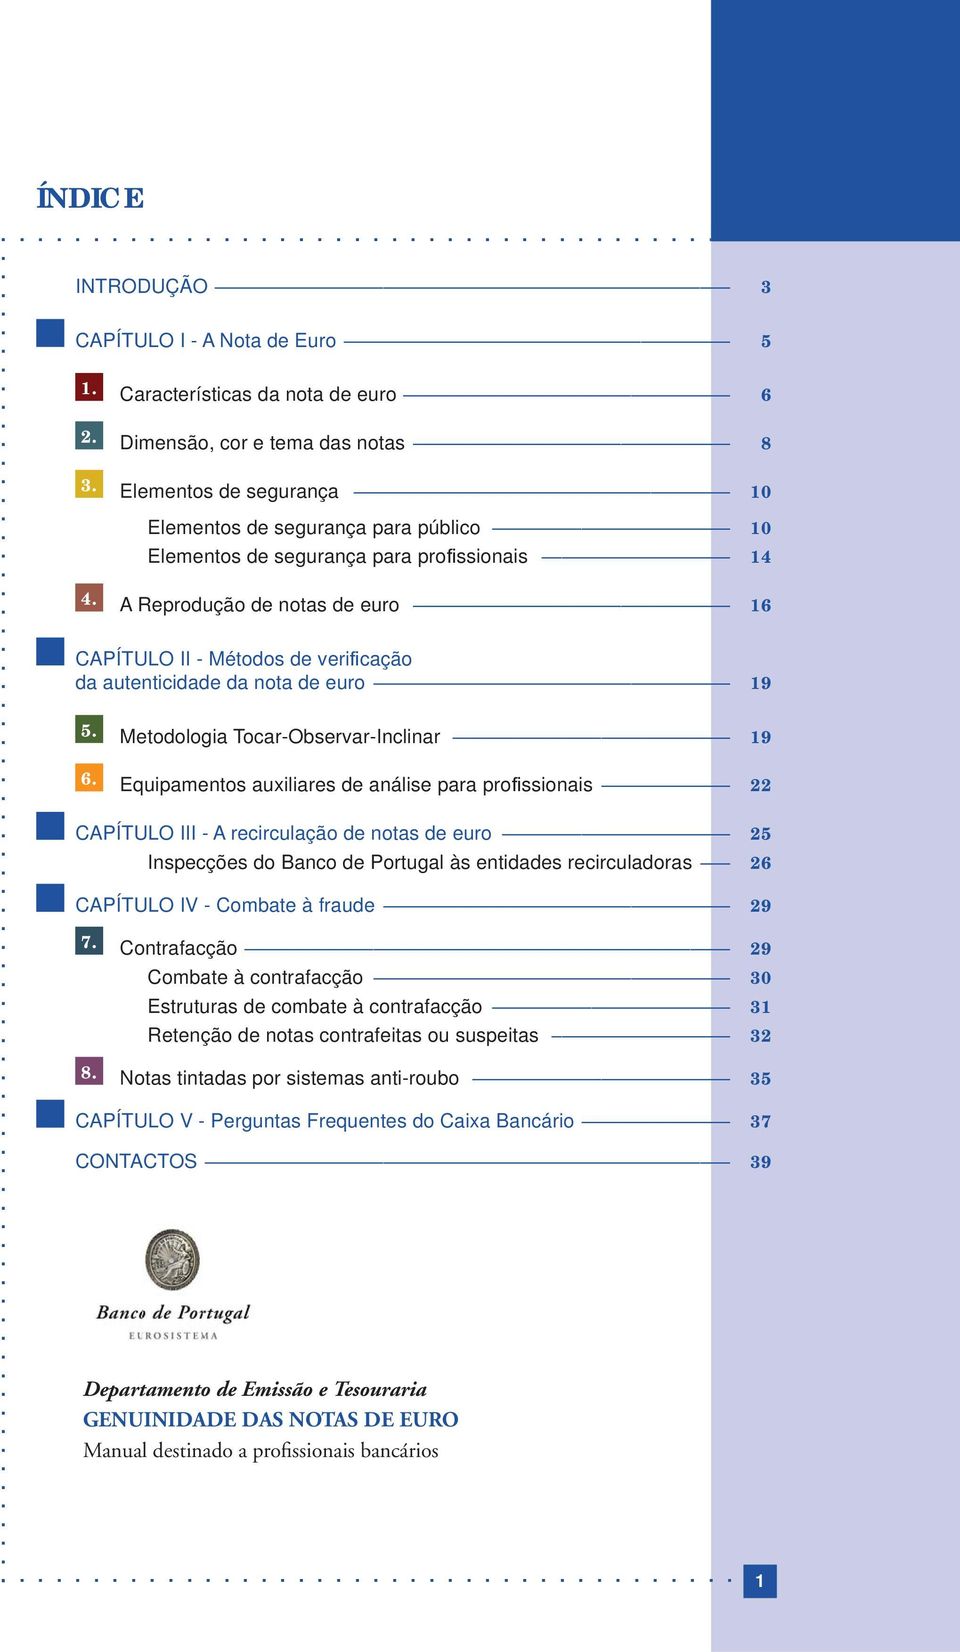 A Reprodução de notas de euro 16 CAPÍTULO II - Métodos de verifi cação da autenticidade da nota de euro 19 5. Metodologia Tocar-Observar-Inclinar 19 6.